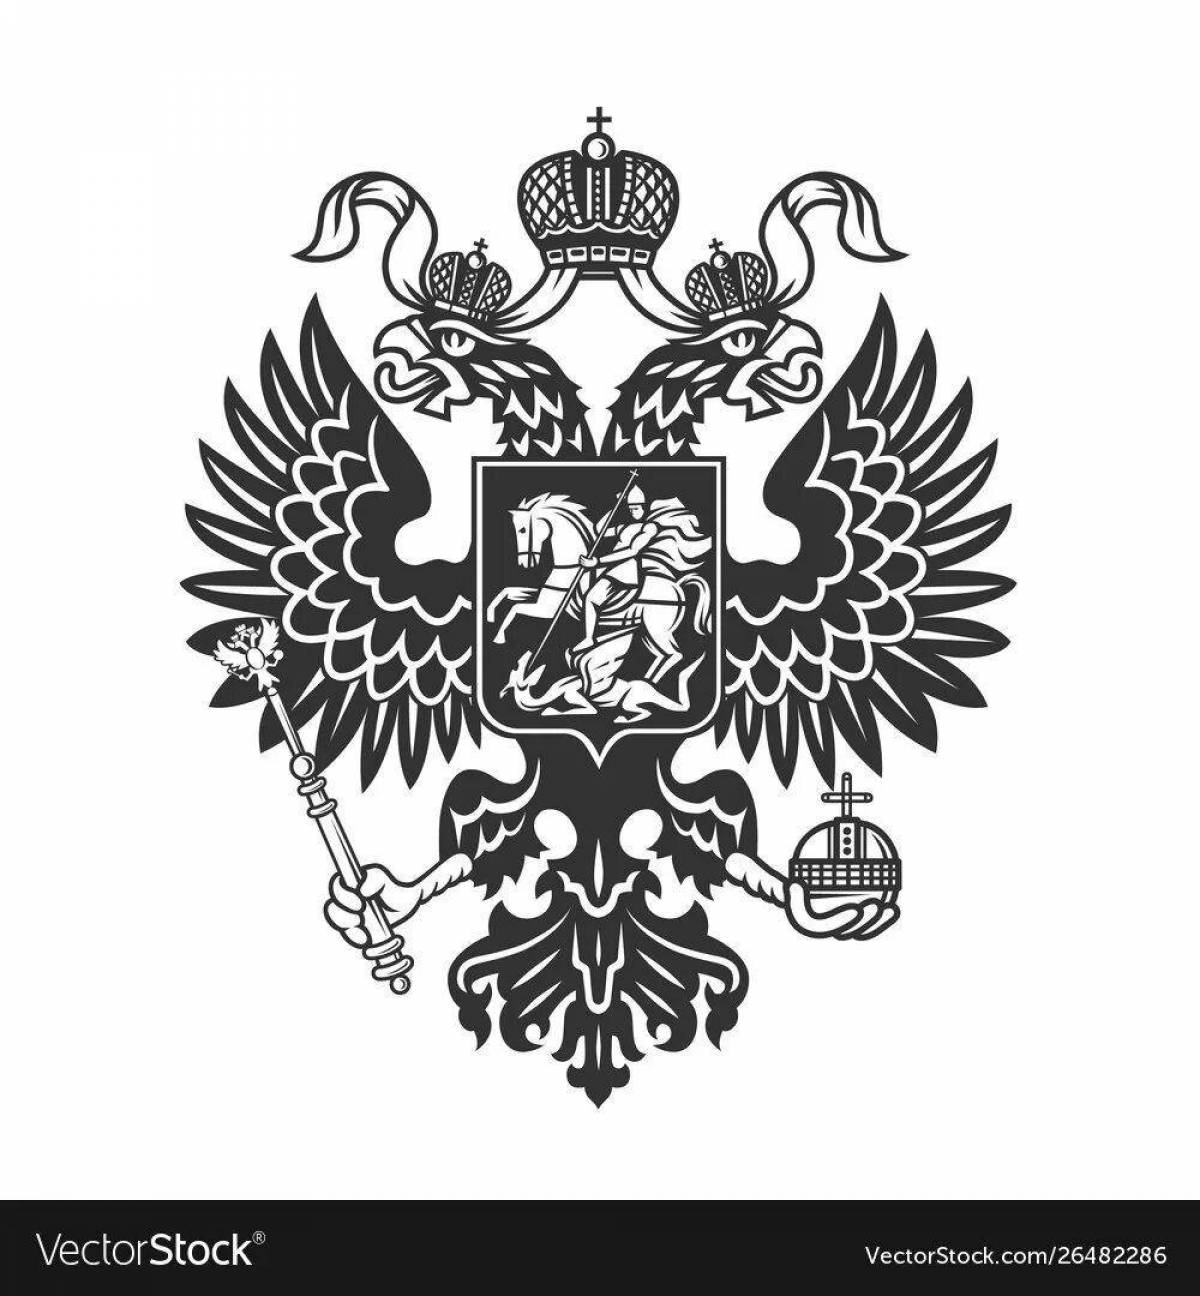 Russian empire #4